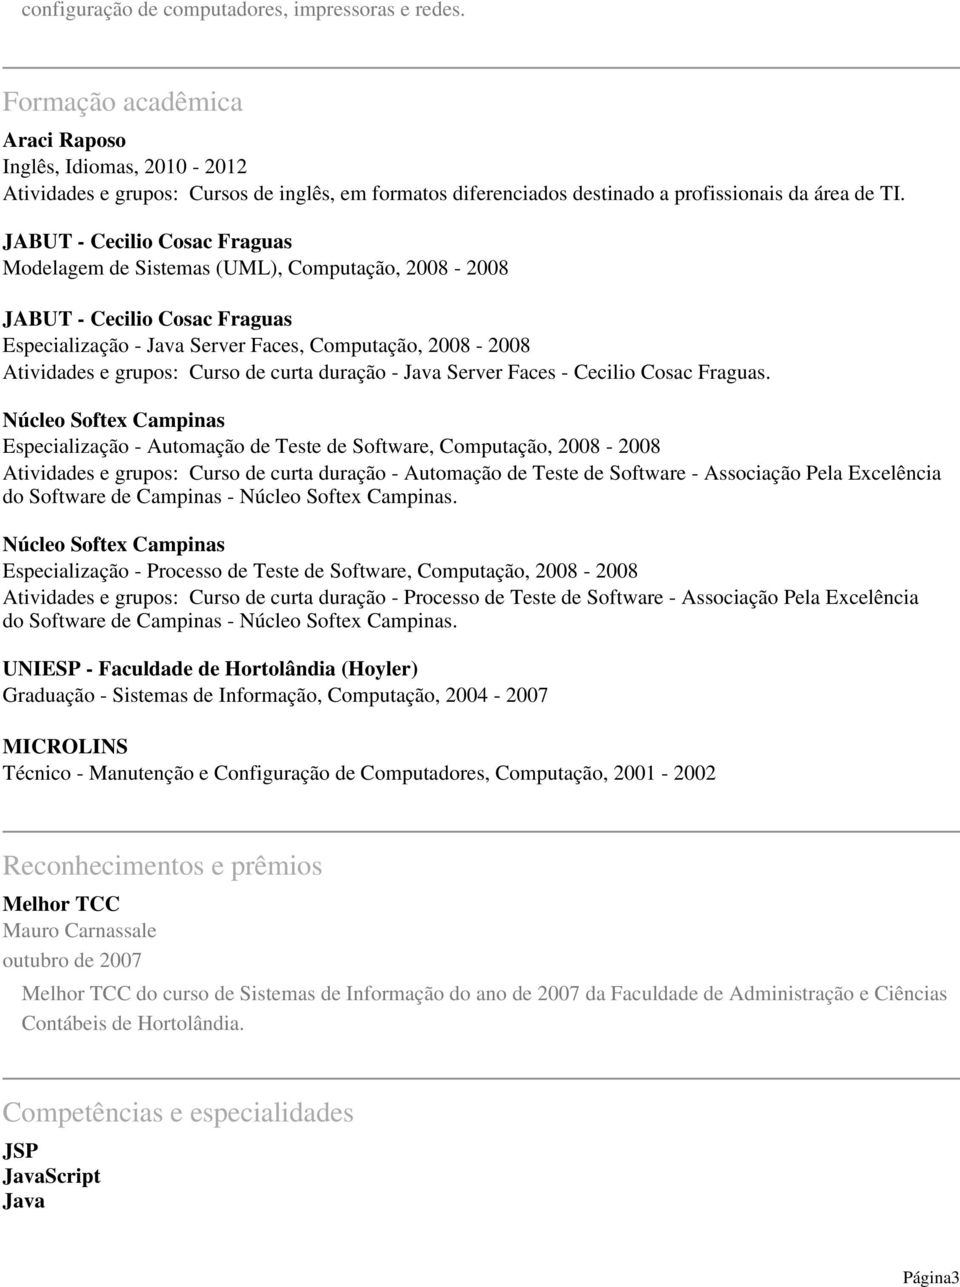 JABUT - Cecilio Cosac Fraguas Modelagem de Sistemas (UML), Computação, 2008-2008 JABUT - Cecilio Cosac Fraguas Especialização - Java Server Faces, Computação, 2008-2008 Atividades e grupos: Curso de